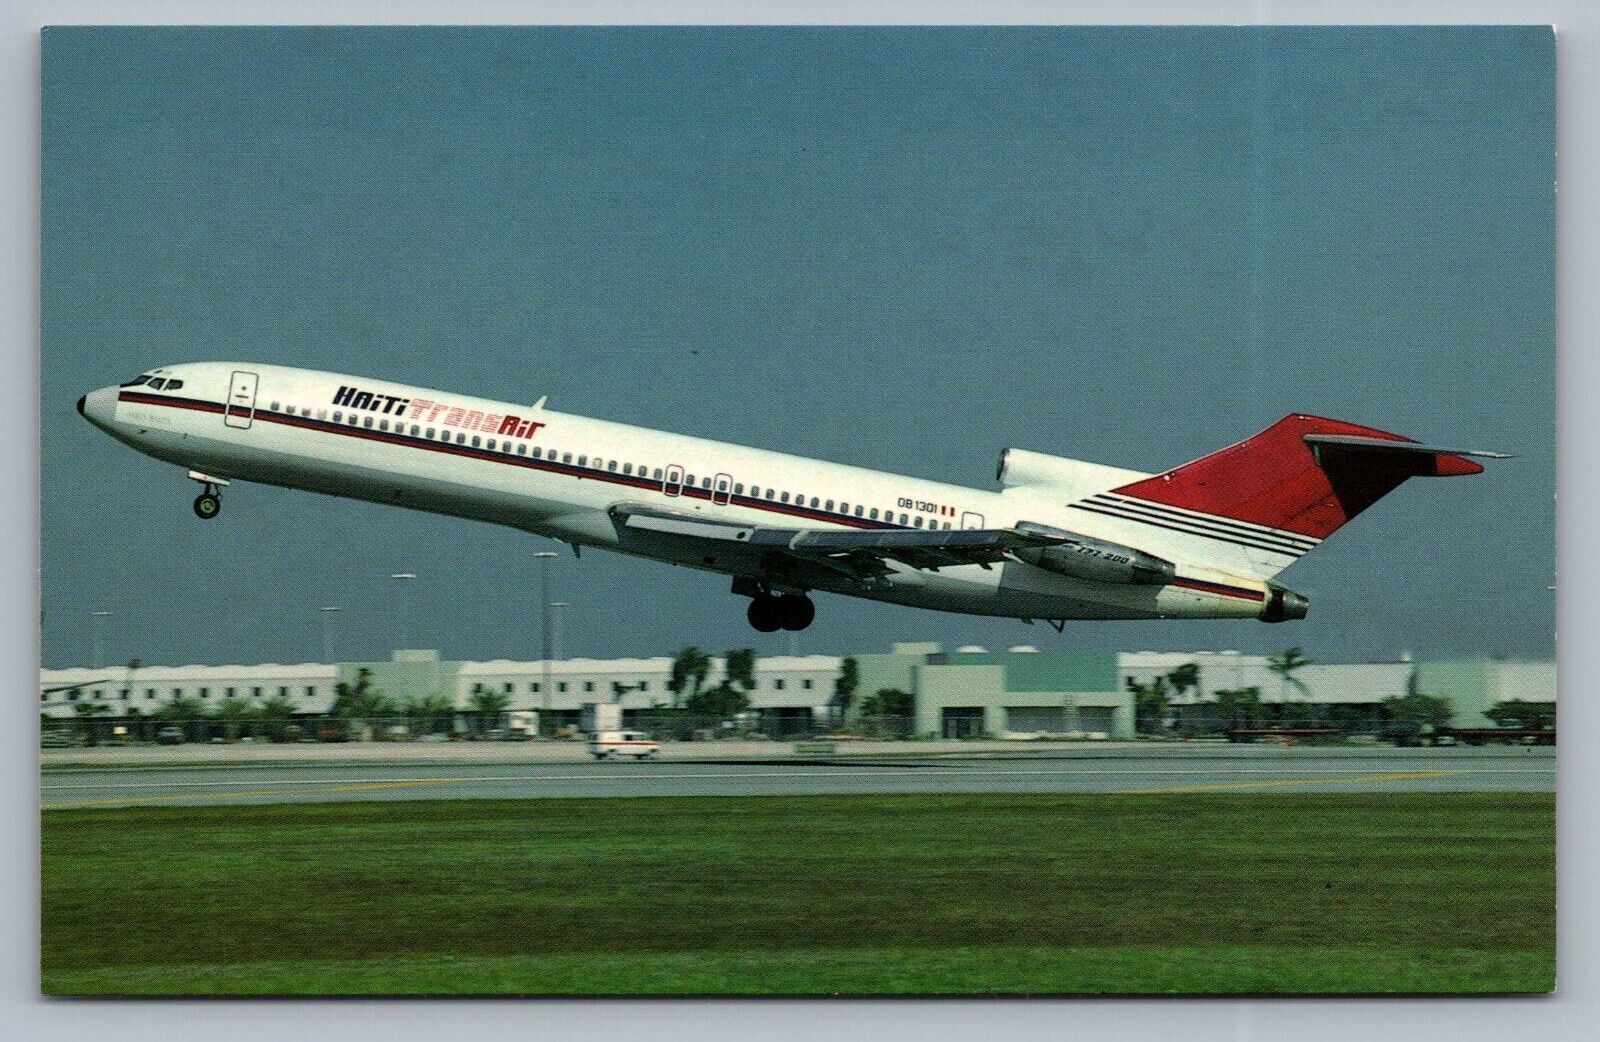 Haiti Trans Air Boeing B-727-247 OB-1301 Airplane Miami Intl Airport Postcard P9